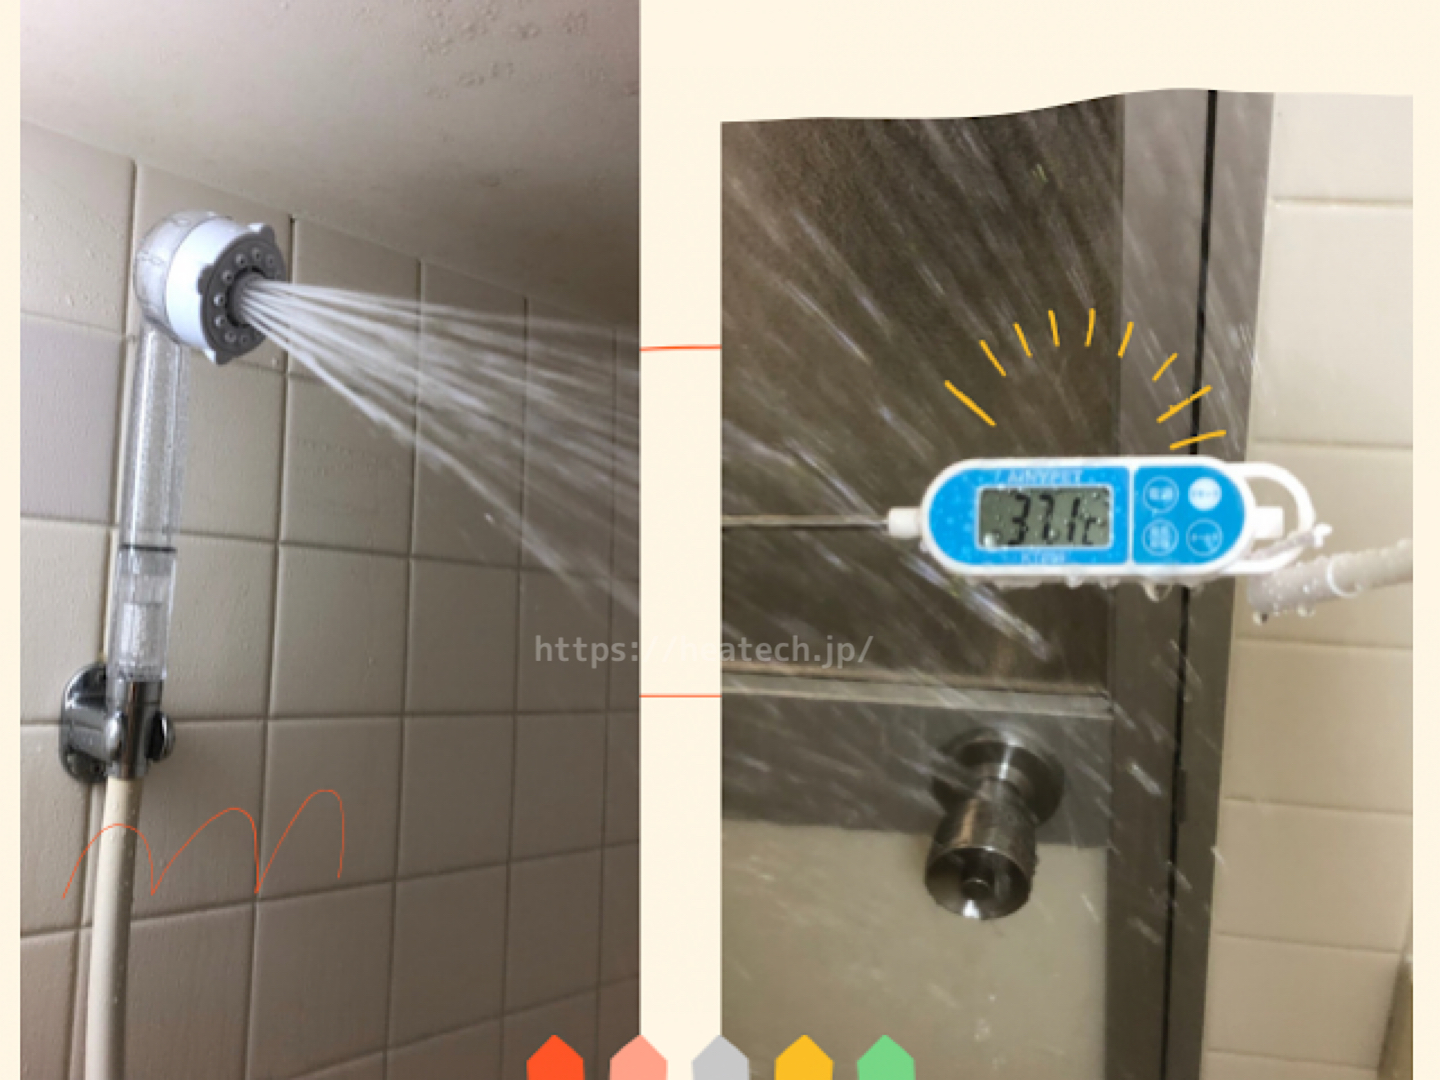 シャワーフックに掛けた時のストレート水流水温を表す画像